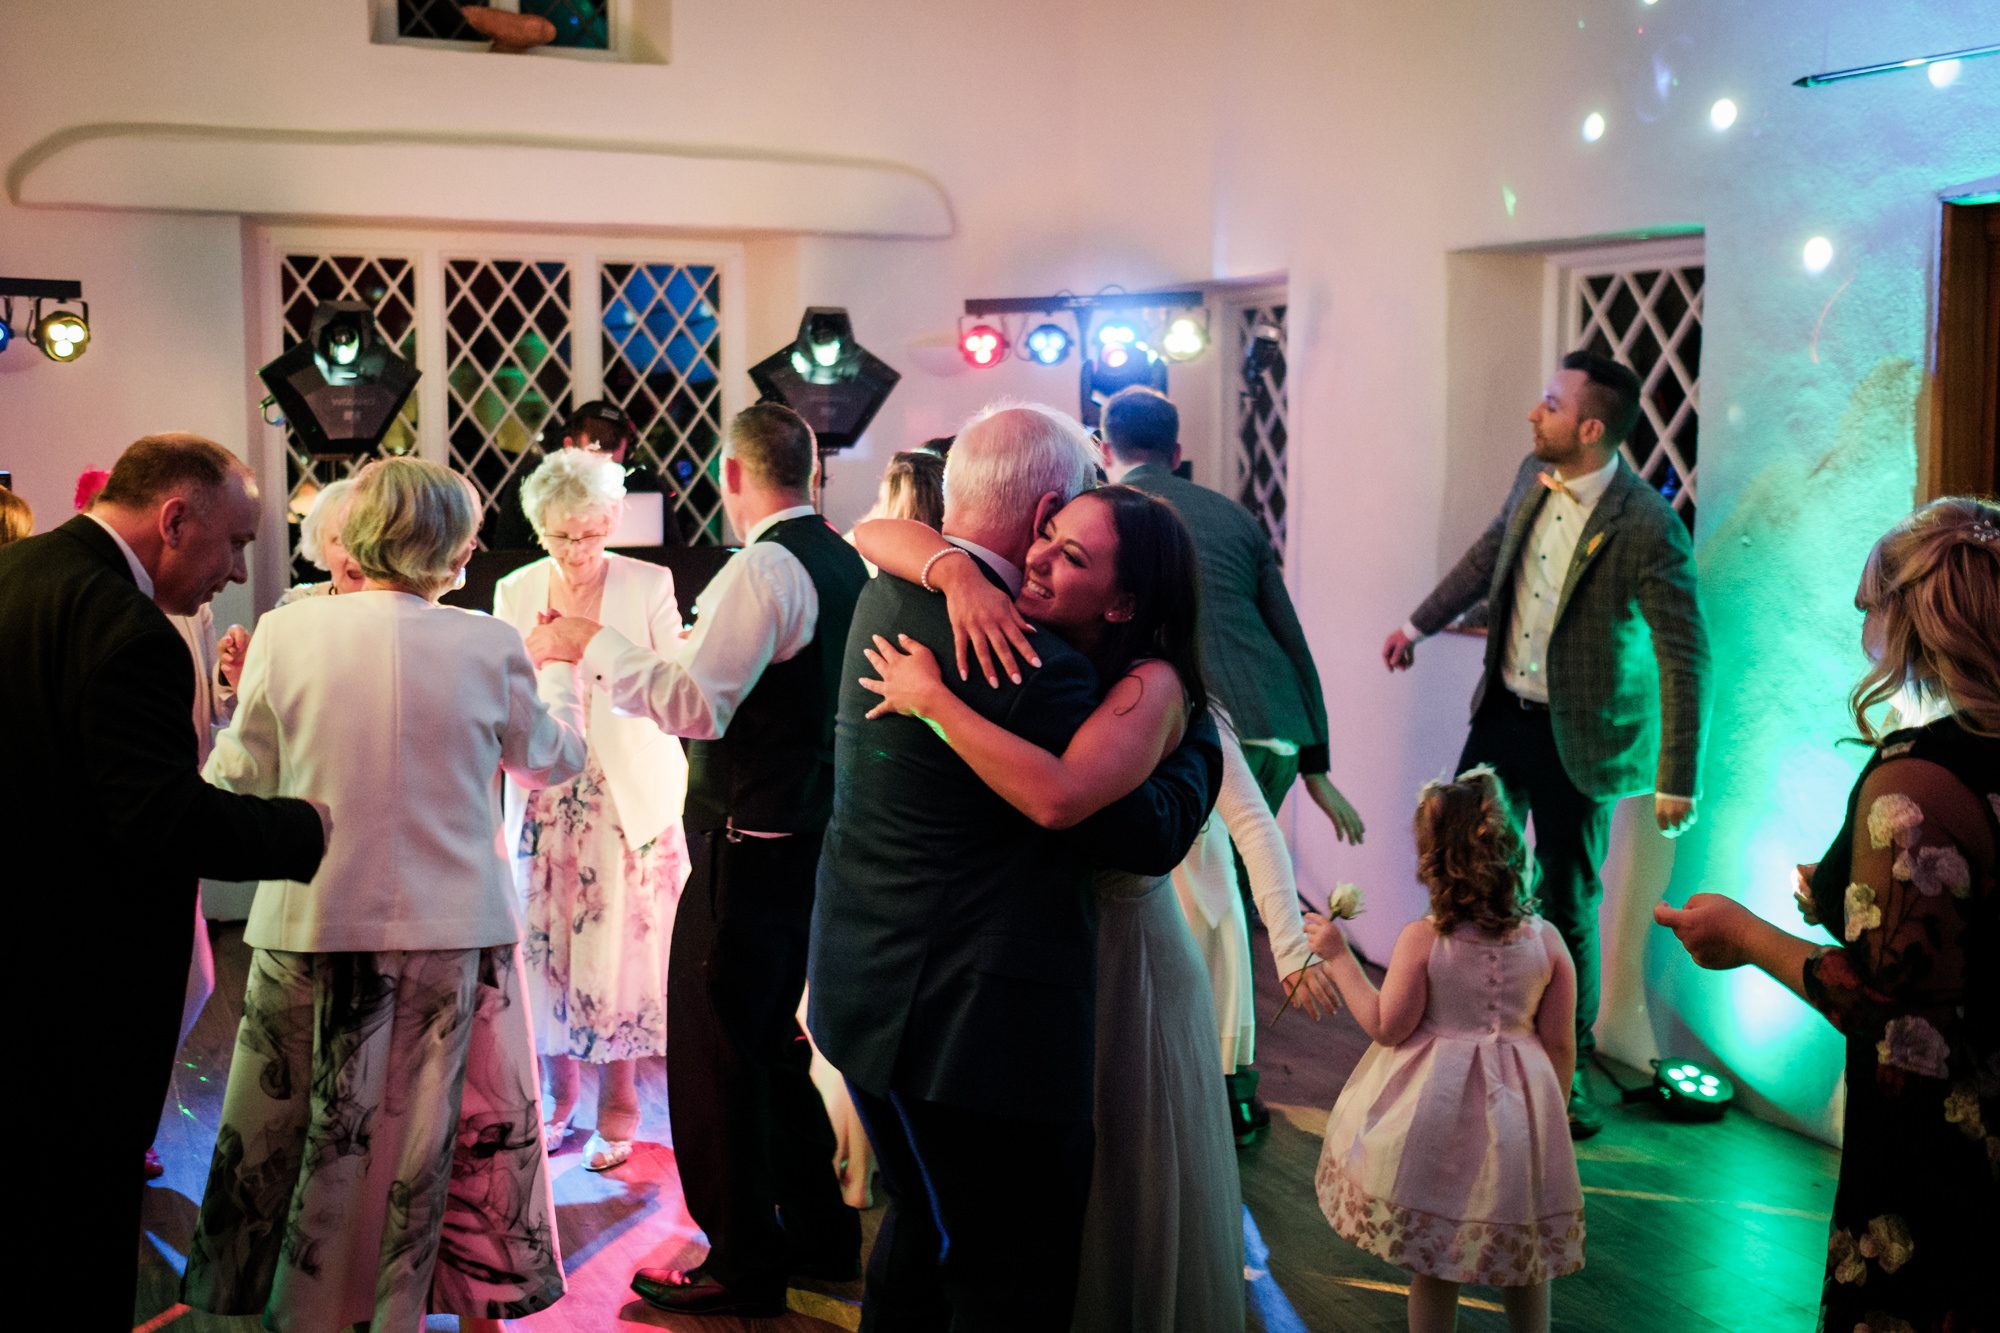 bridesmaid and elderly gentleman hugging on dance floor